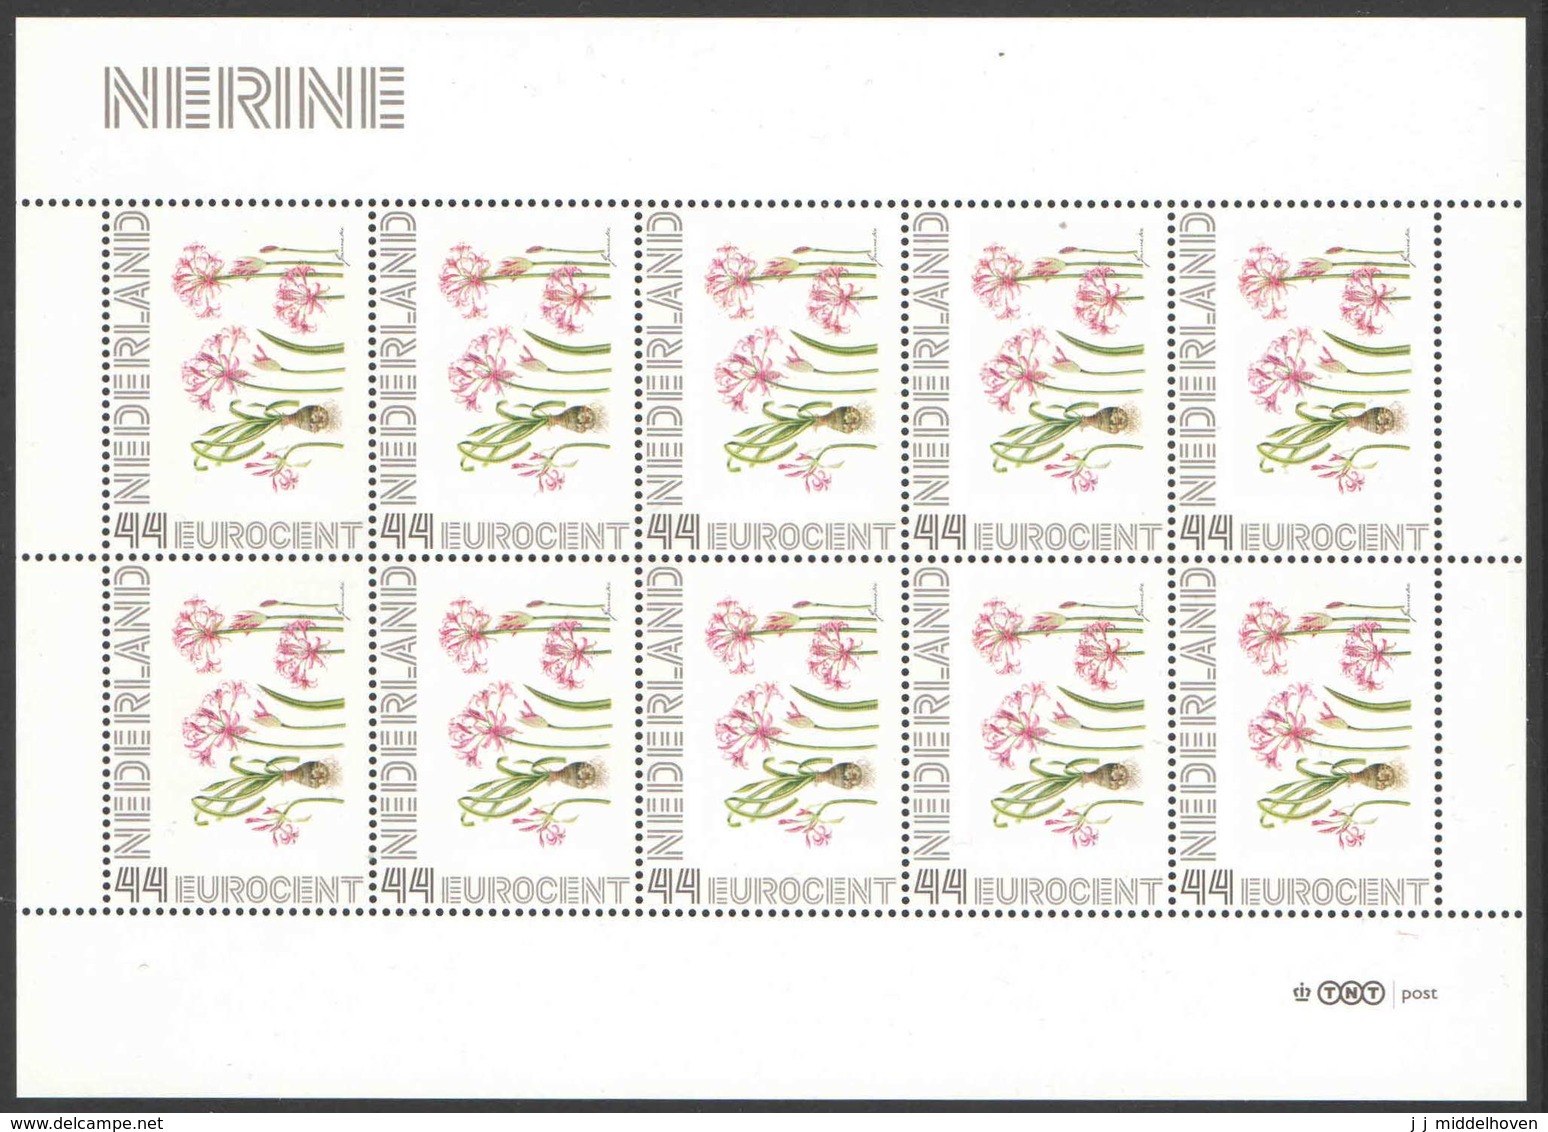 Nederland Postfris/MNH, Janneke Brinkman: Bloemen, Flowers, Fleurs. Nerine - Persoonlijke Postzegels